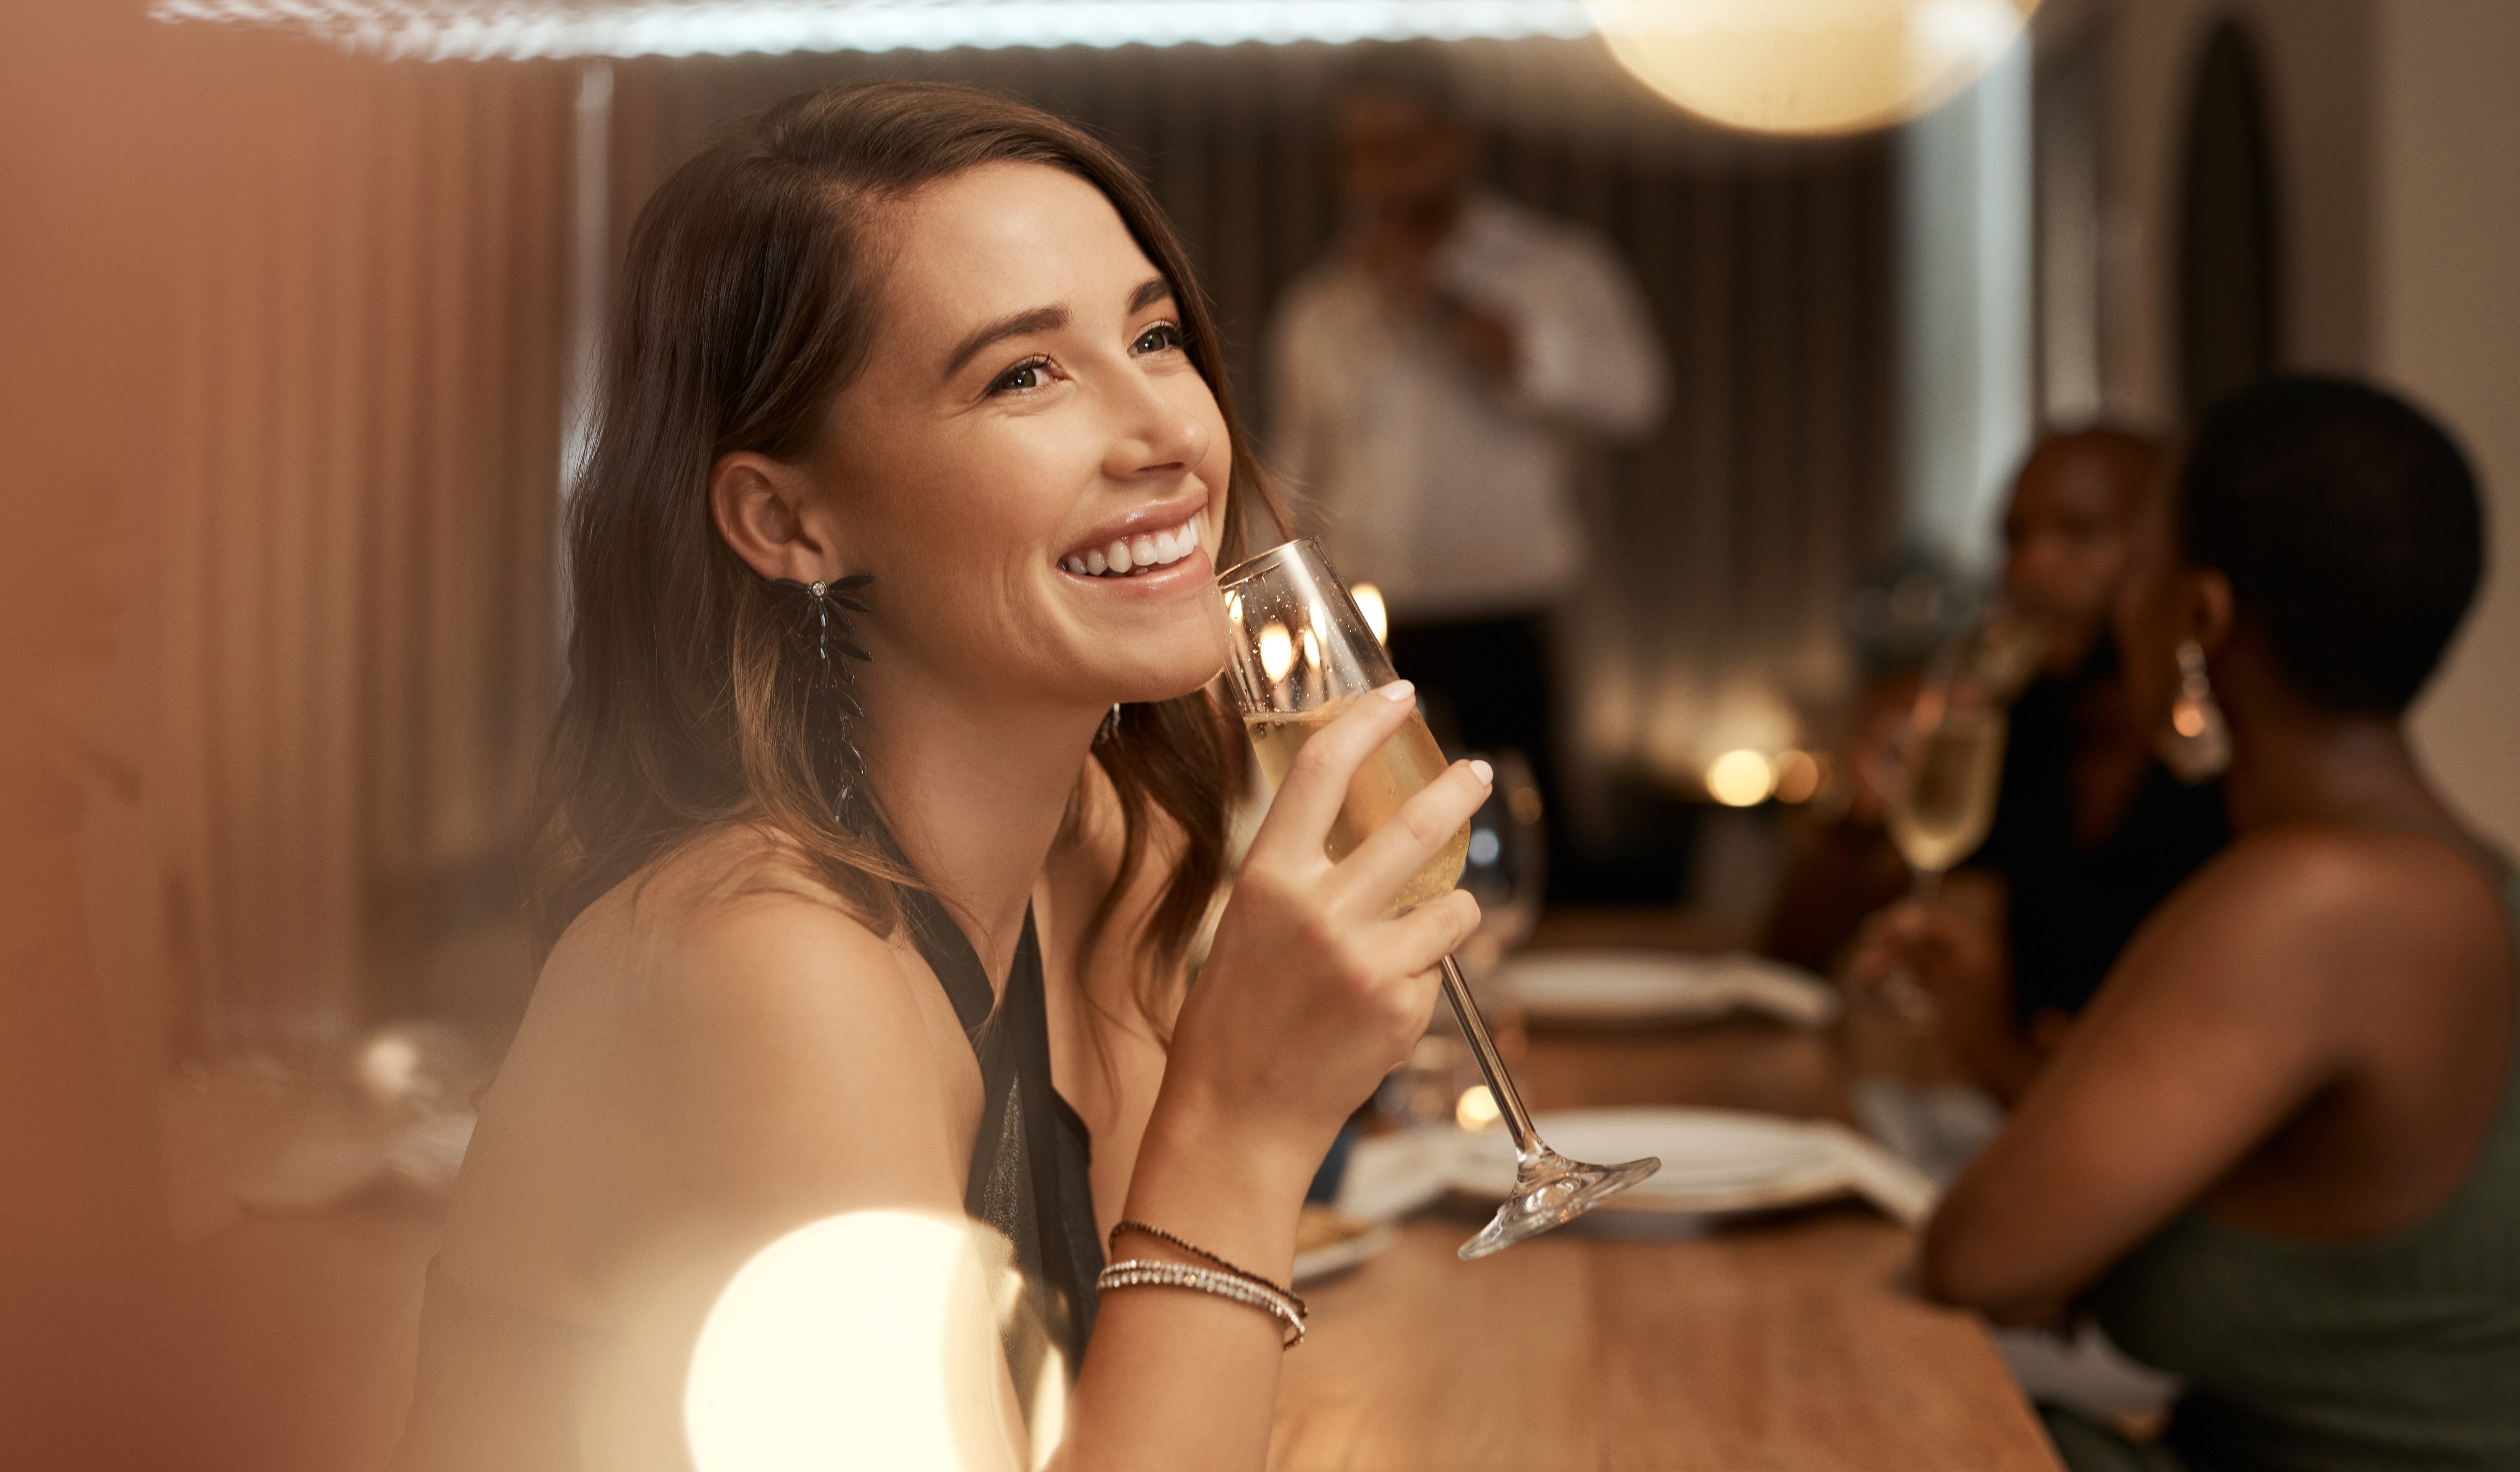 Femme tenant une coupe de champagne dans un restaurant | Source : Shutterstock